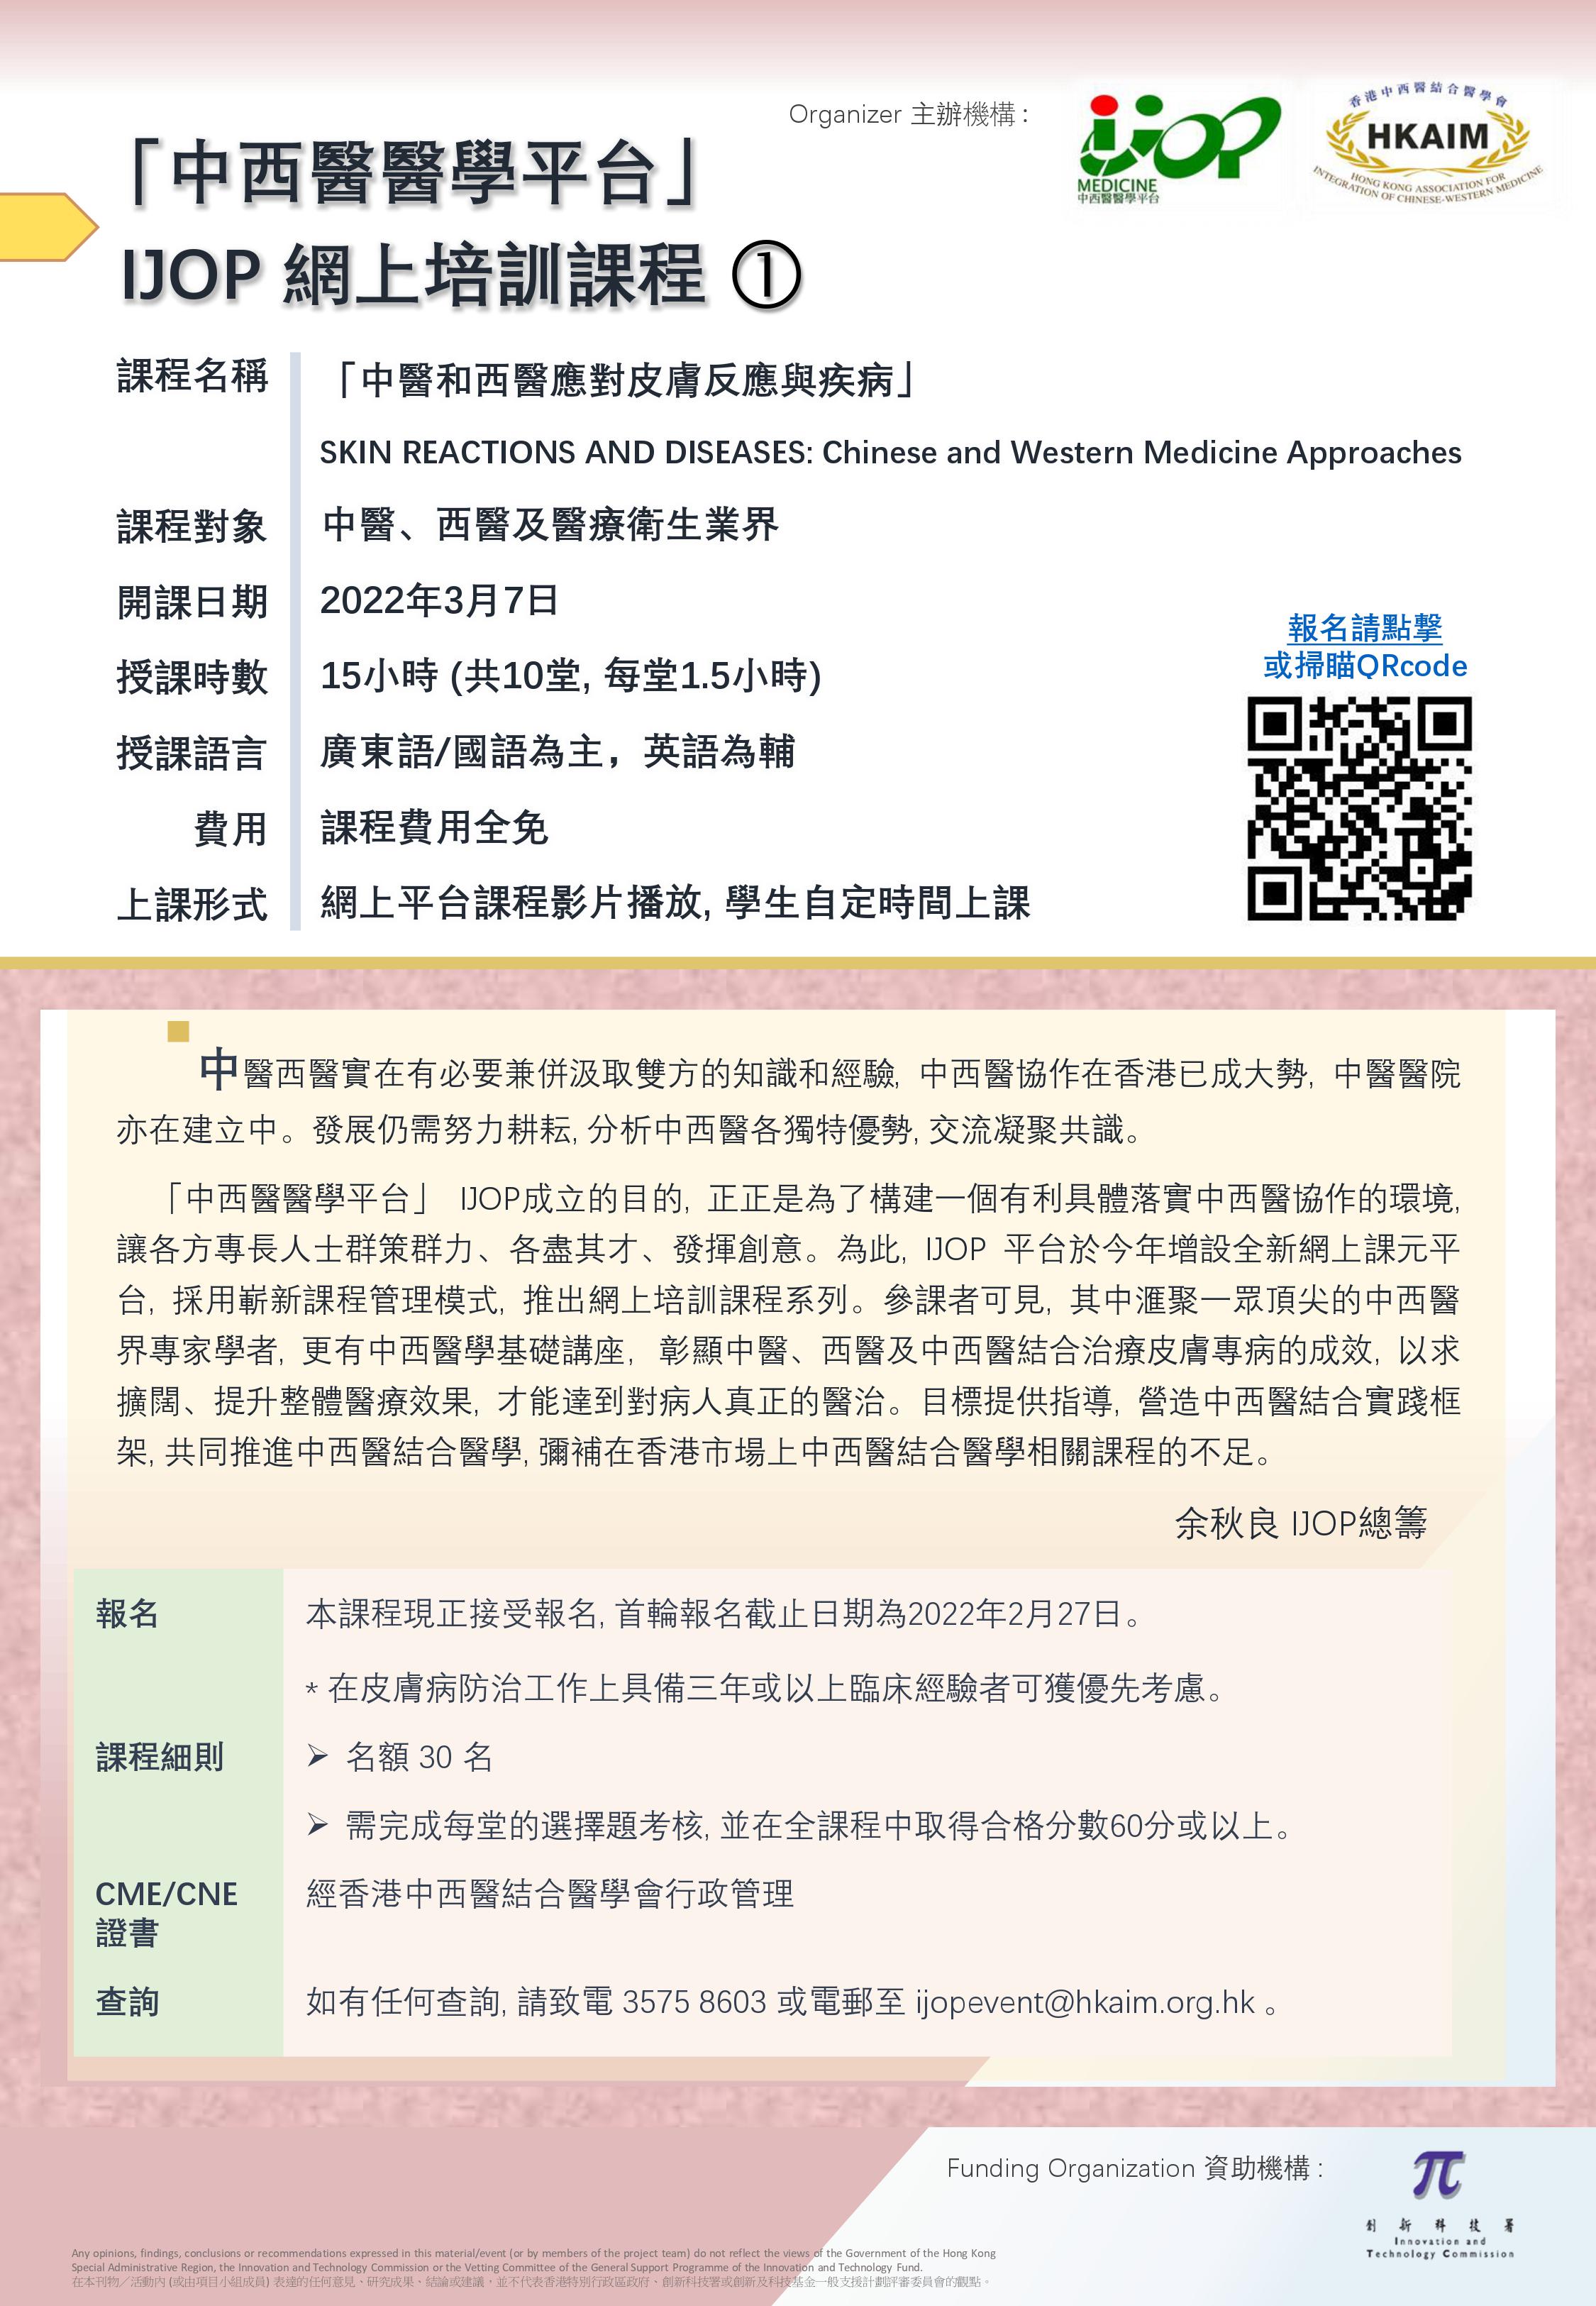 「中西醫醫學平台」網上培訓課程「中醫和西醫應對皮膚反應與疾病」